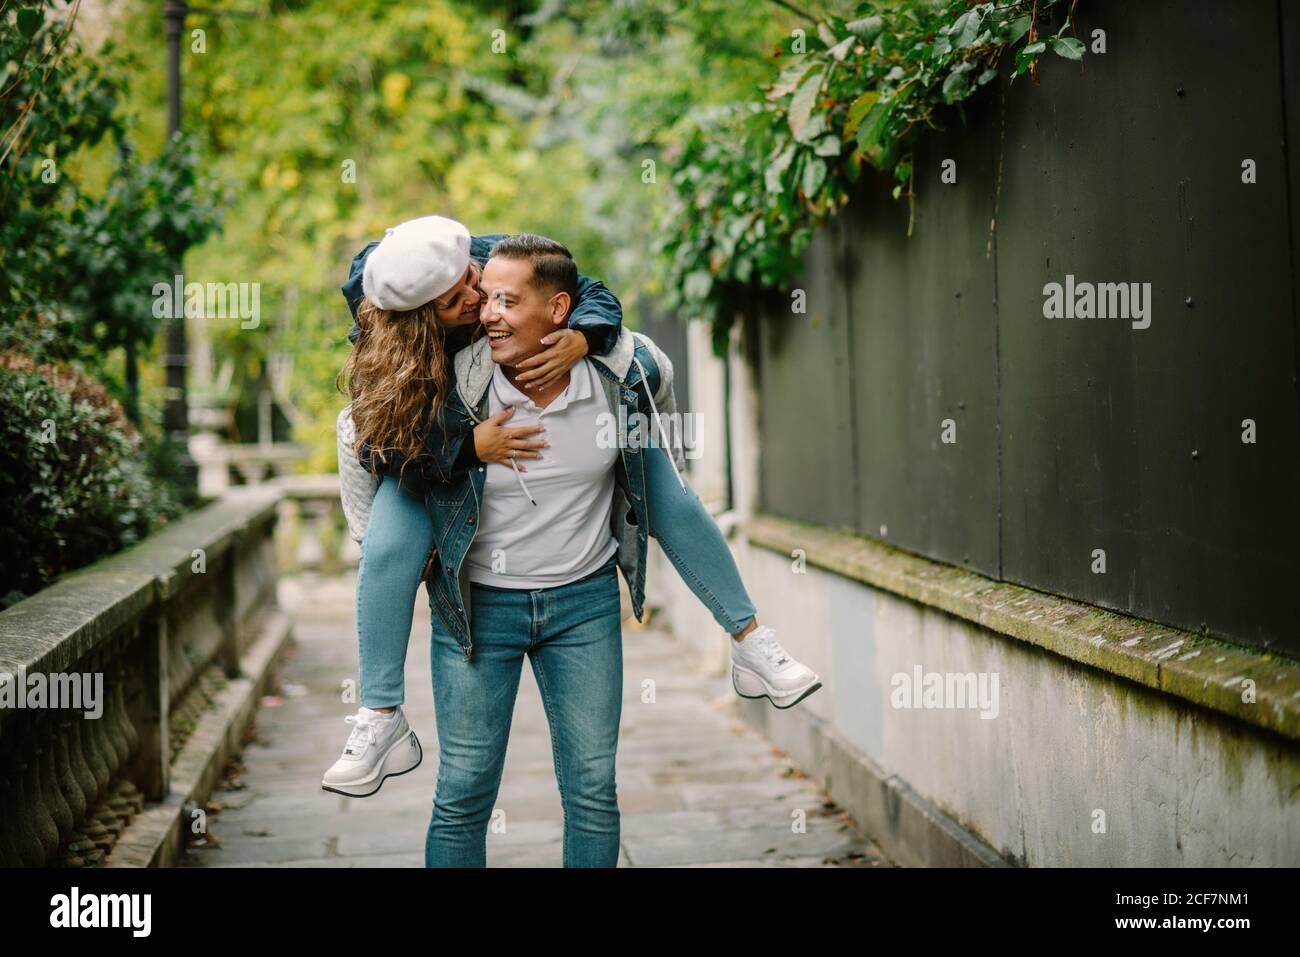 Mujer contenta con ropa informal sentada en la espalda y besándose feliz hombre caminando en un pequeño callejón con plantas verdes fondo borroso Foto de stock